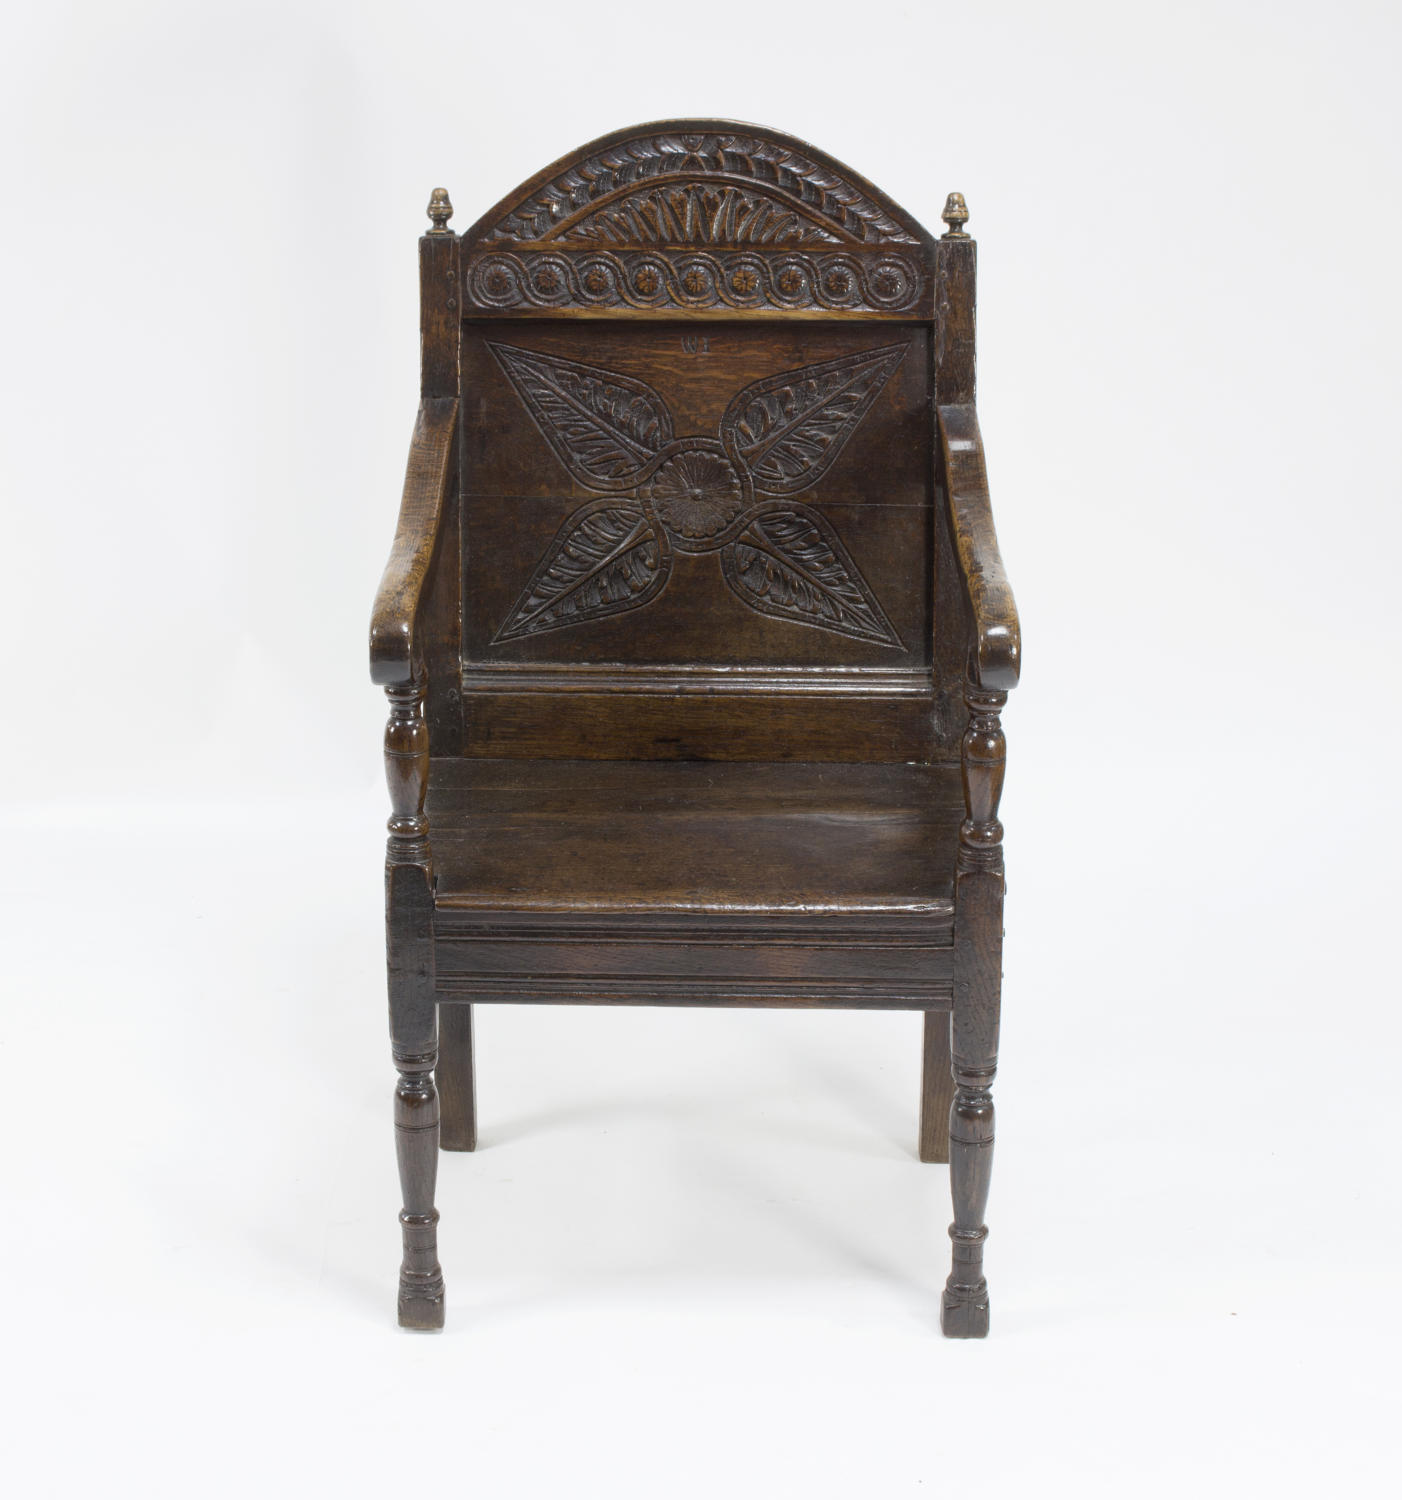 English oak wainscot chair